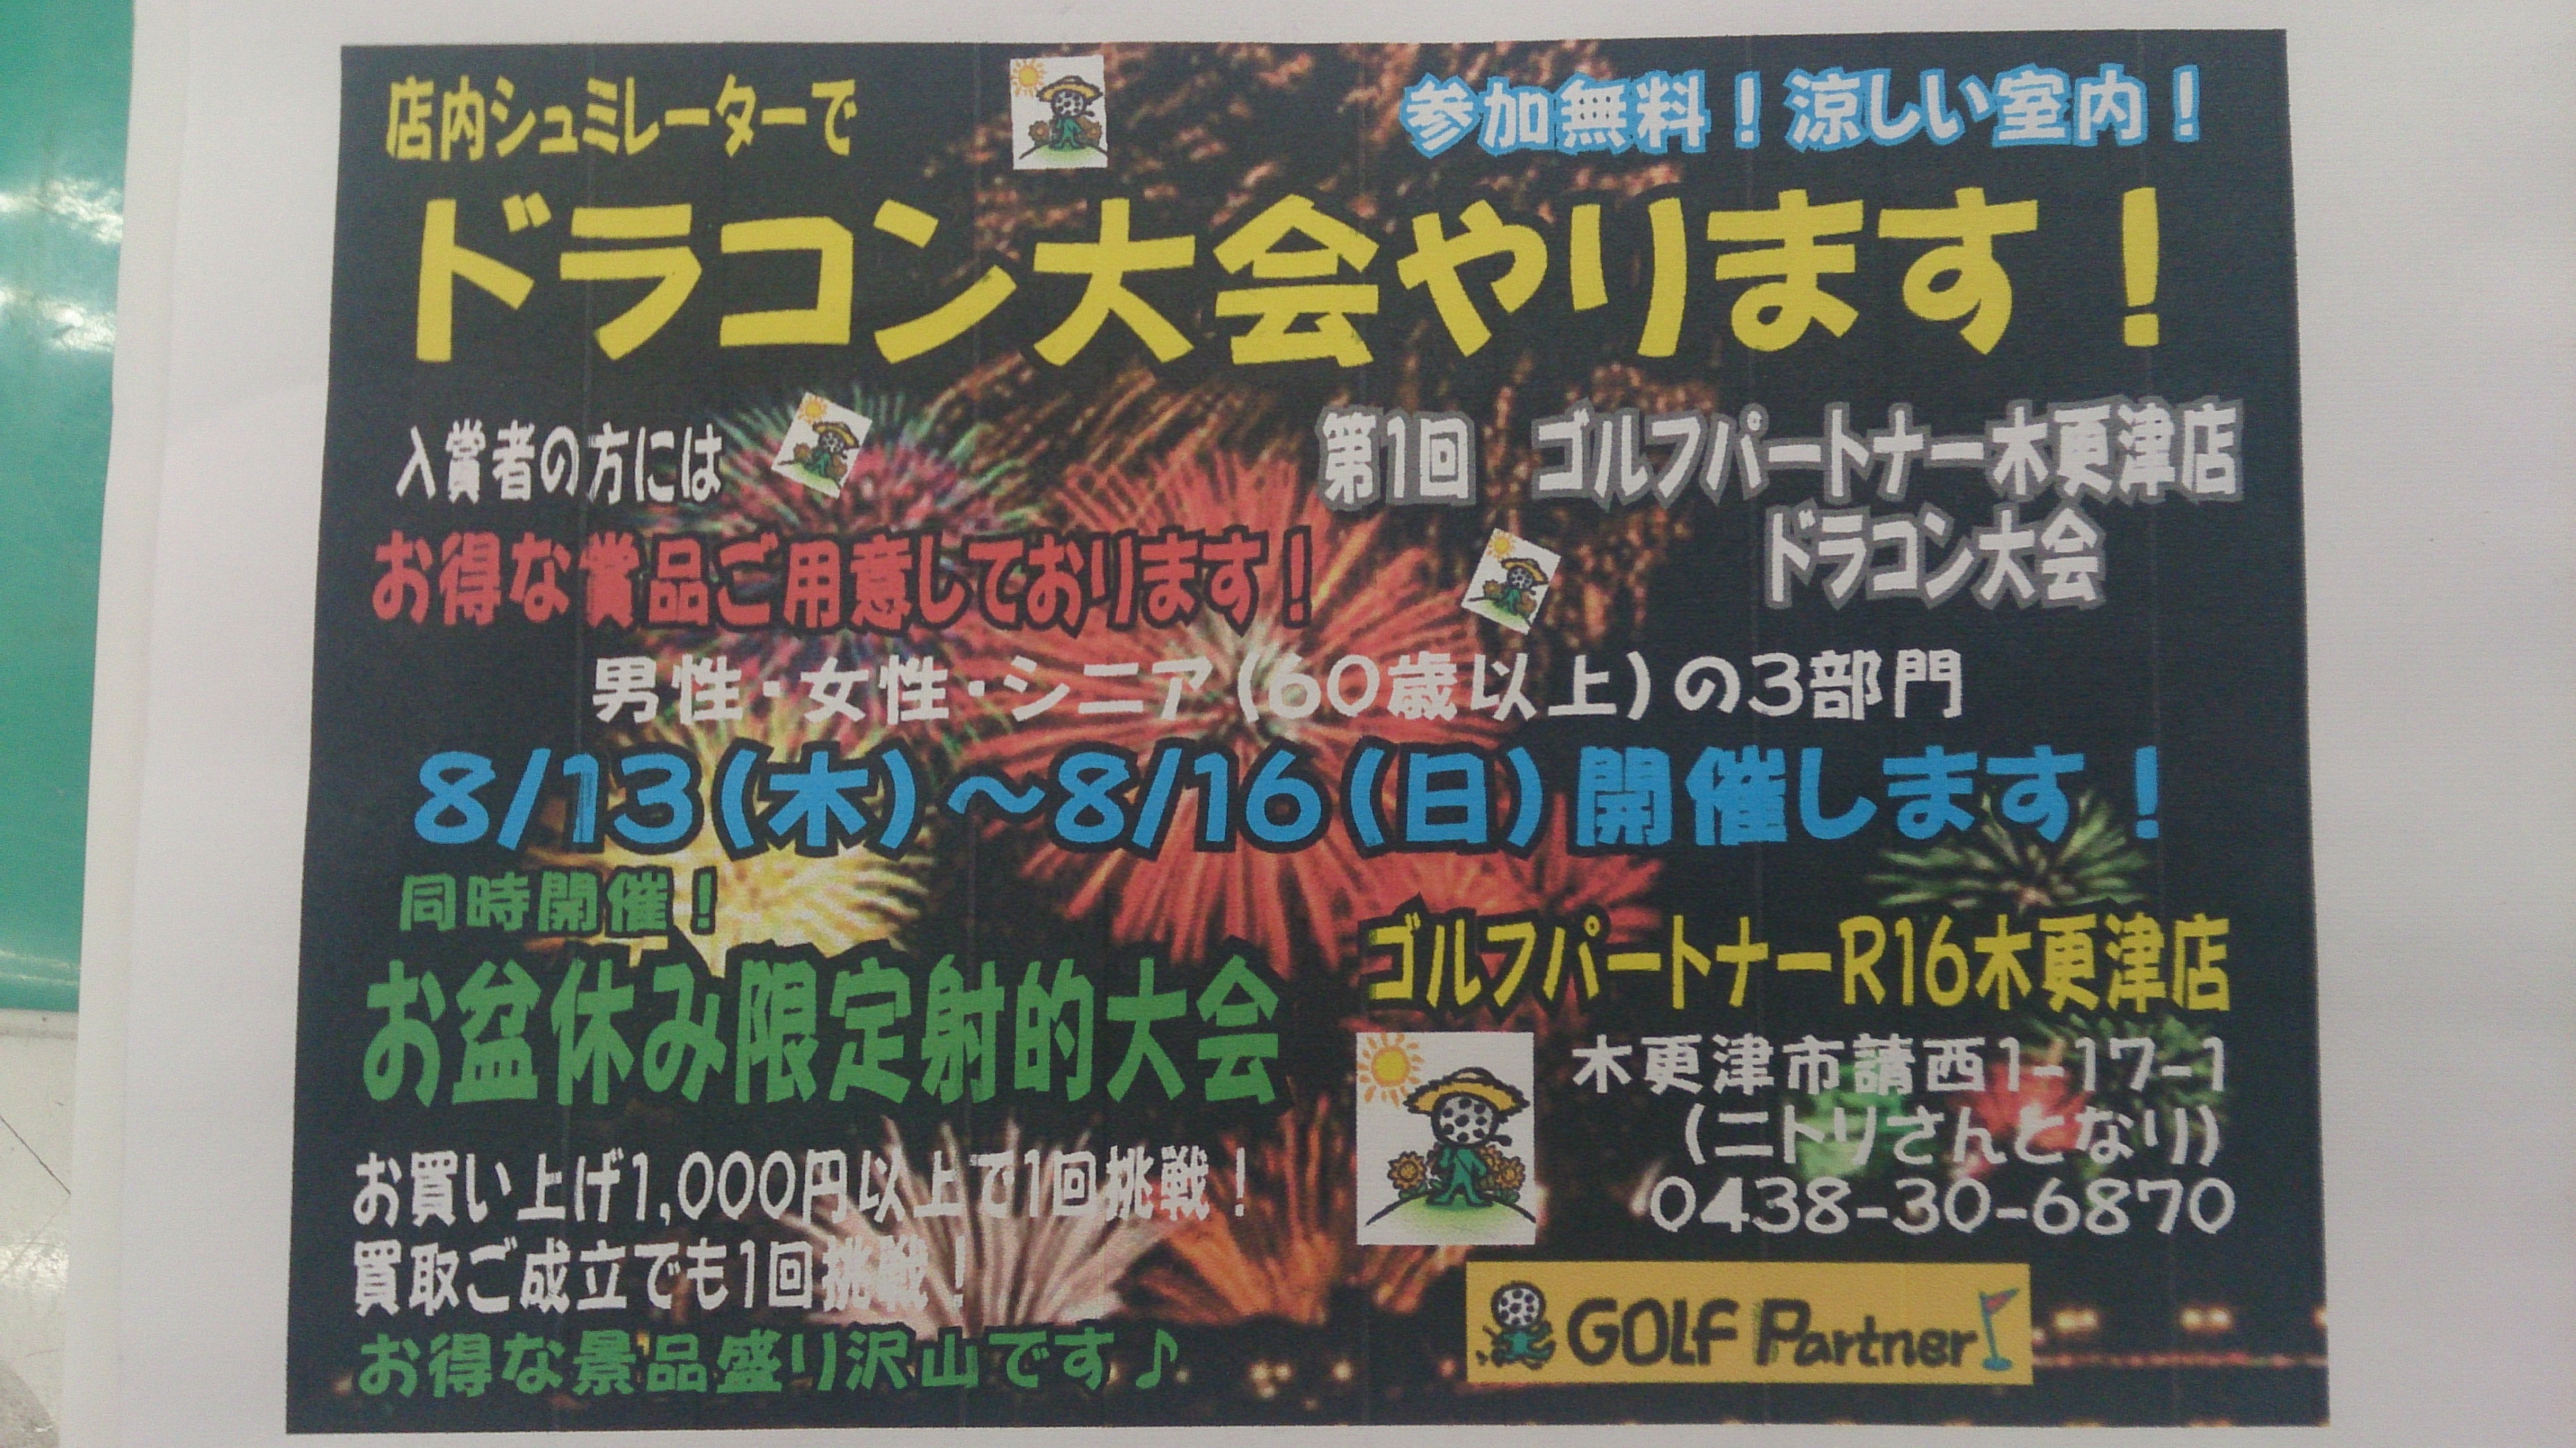 http://www.golfpartner.co.jp/942/DSC_0043.jpg